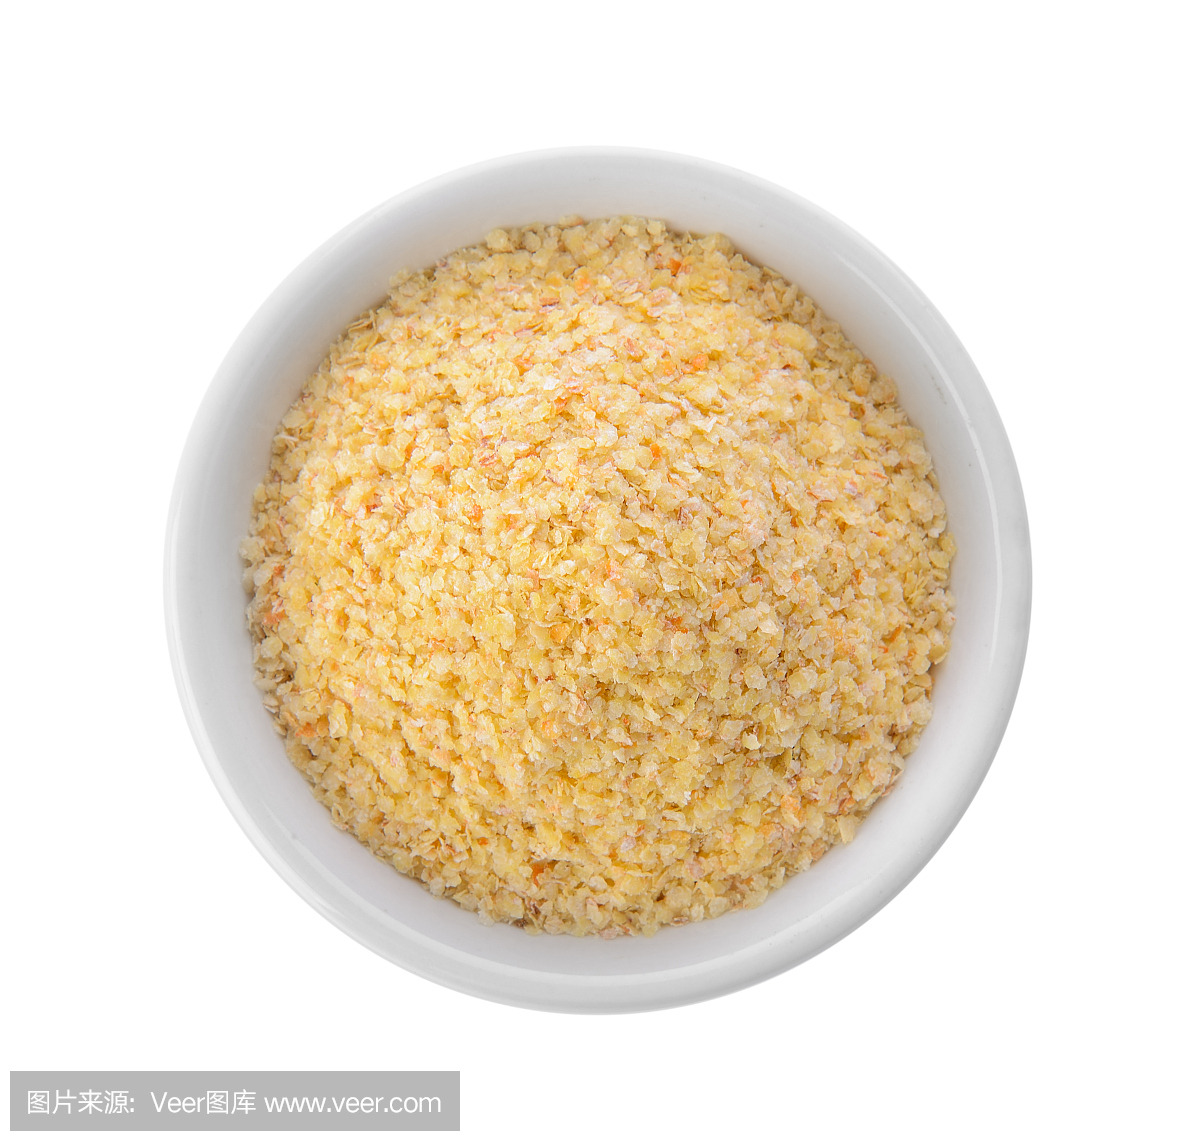 在一个碗里的小麦胚芽在白色背景上